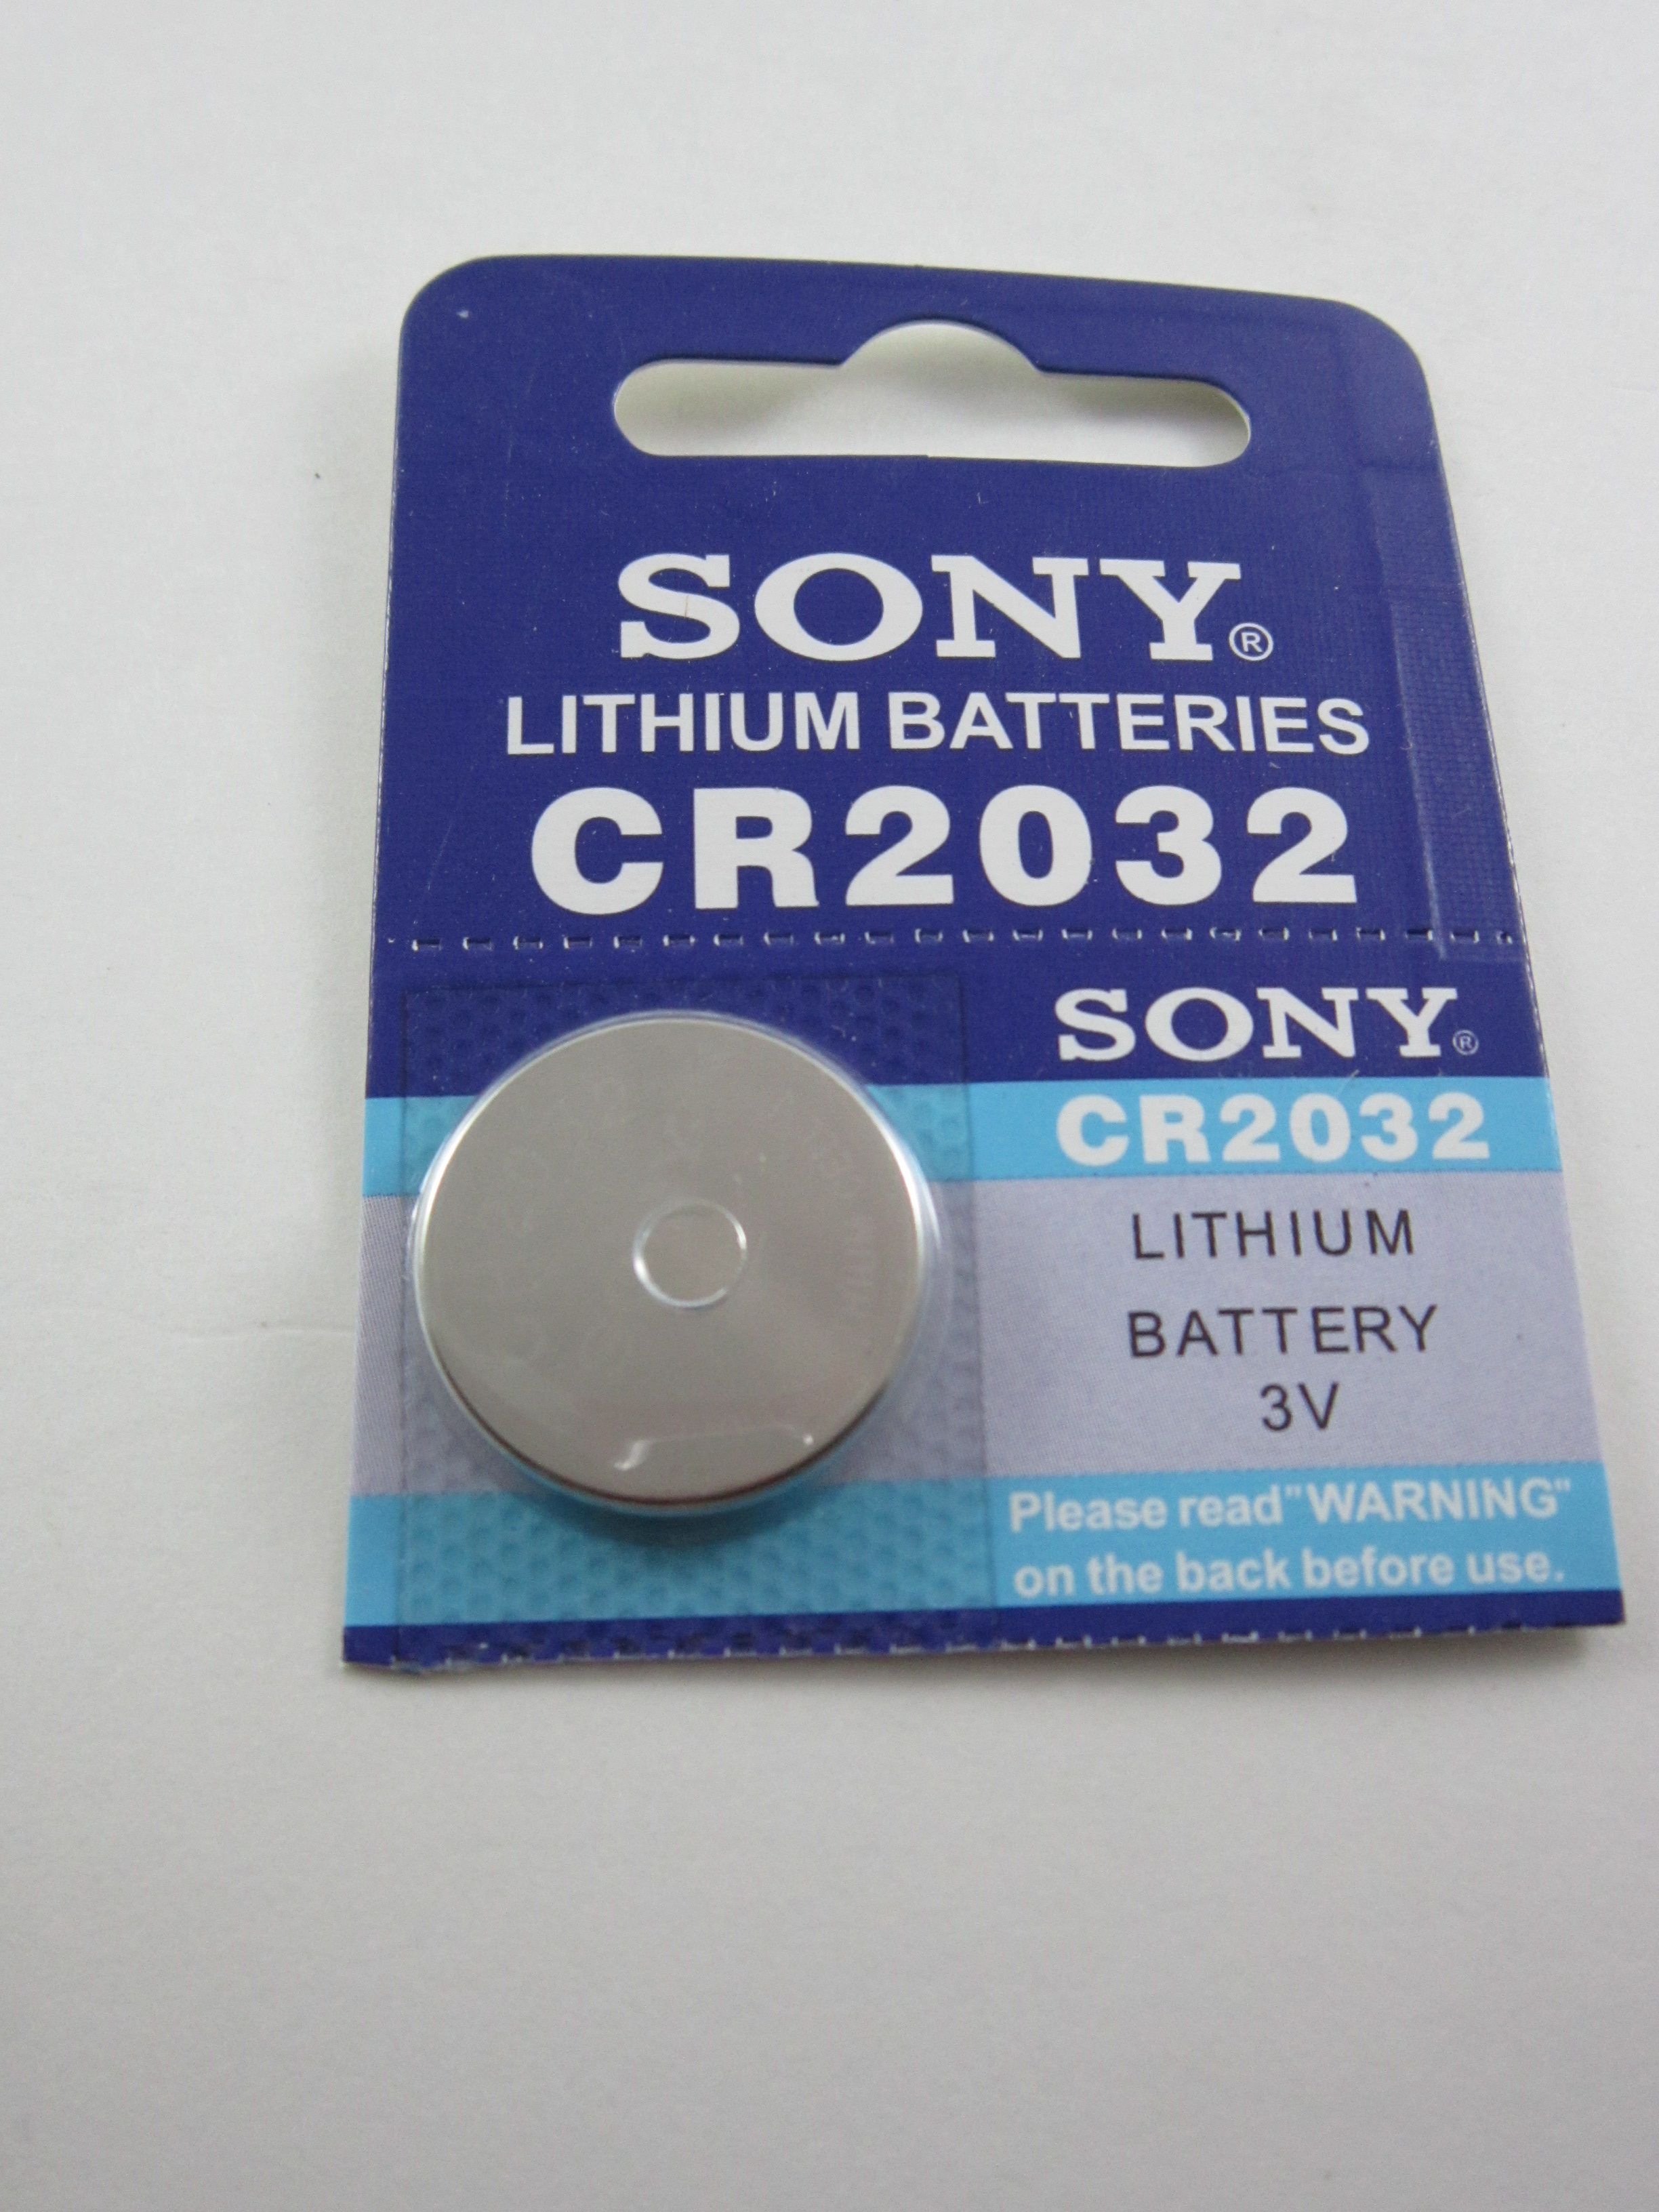 Cr2032 batteries. Lithium Battery cr2032 3v. Cr2032 Lithium Cell 3v. Батарейка cr2032 (3v). Батарейка плоская круглая cr2032.